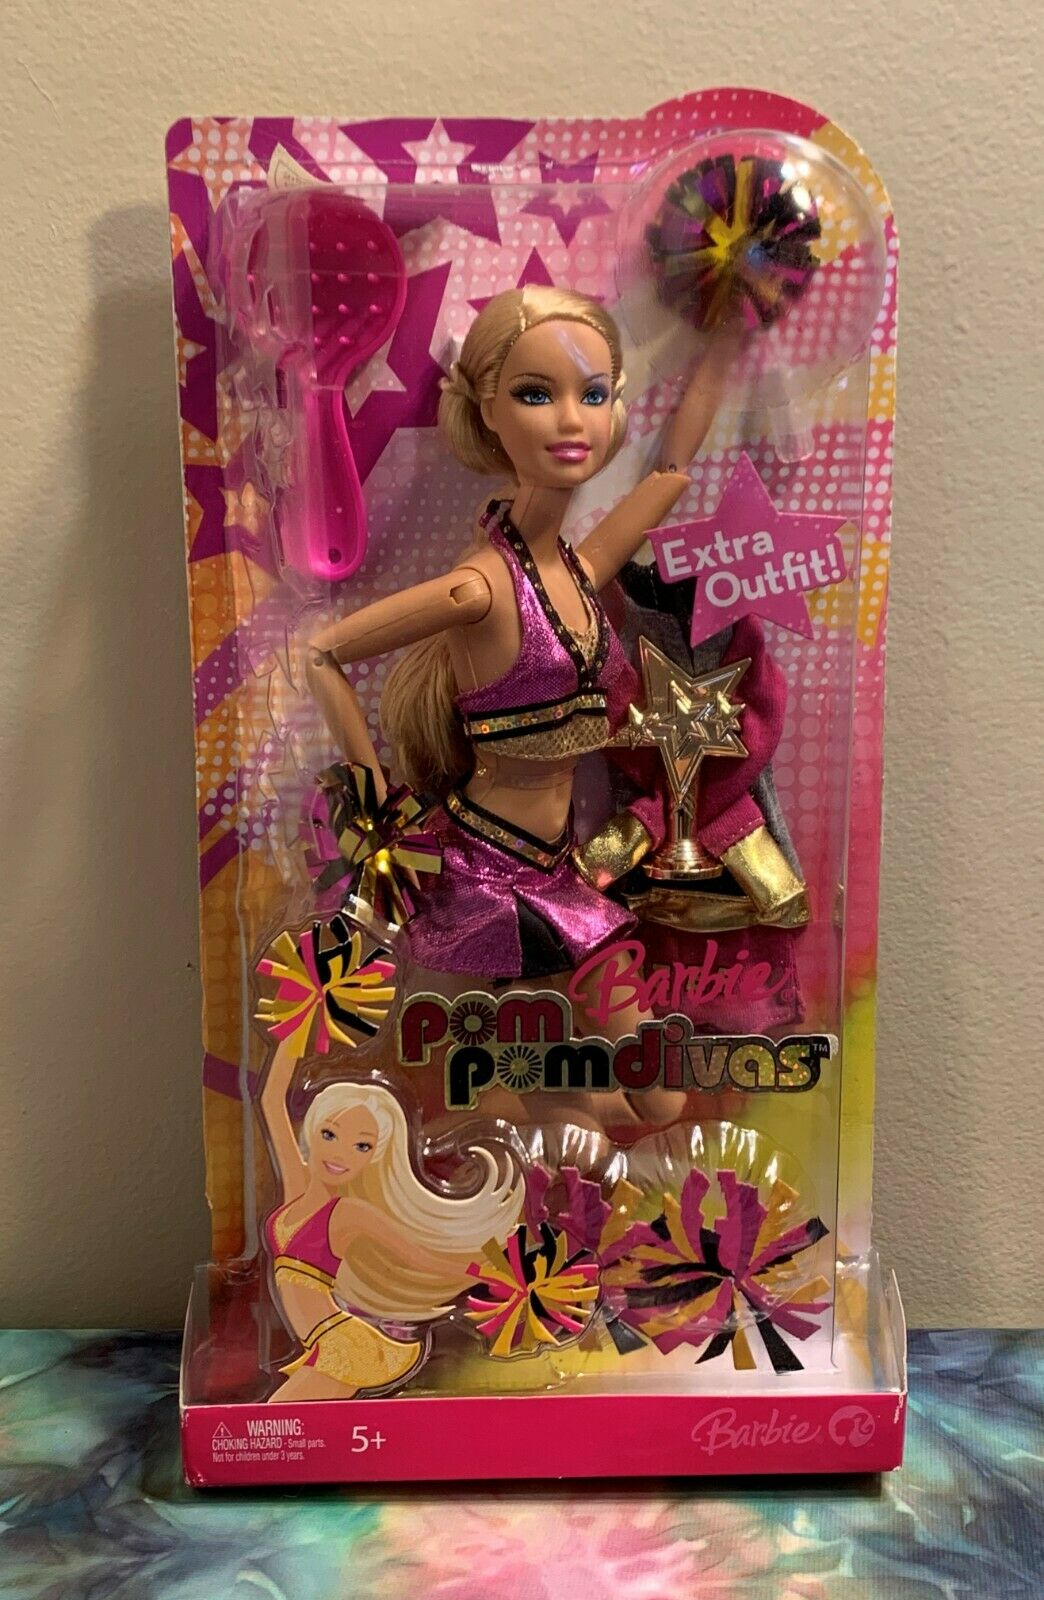 Pre-production Sample Barbie Pom Pom Divas Doll -2007 Mattel - Mock Up Packaging